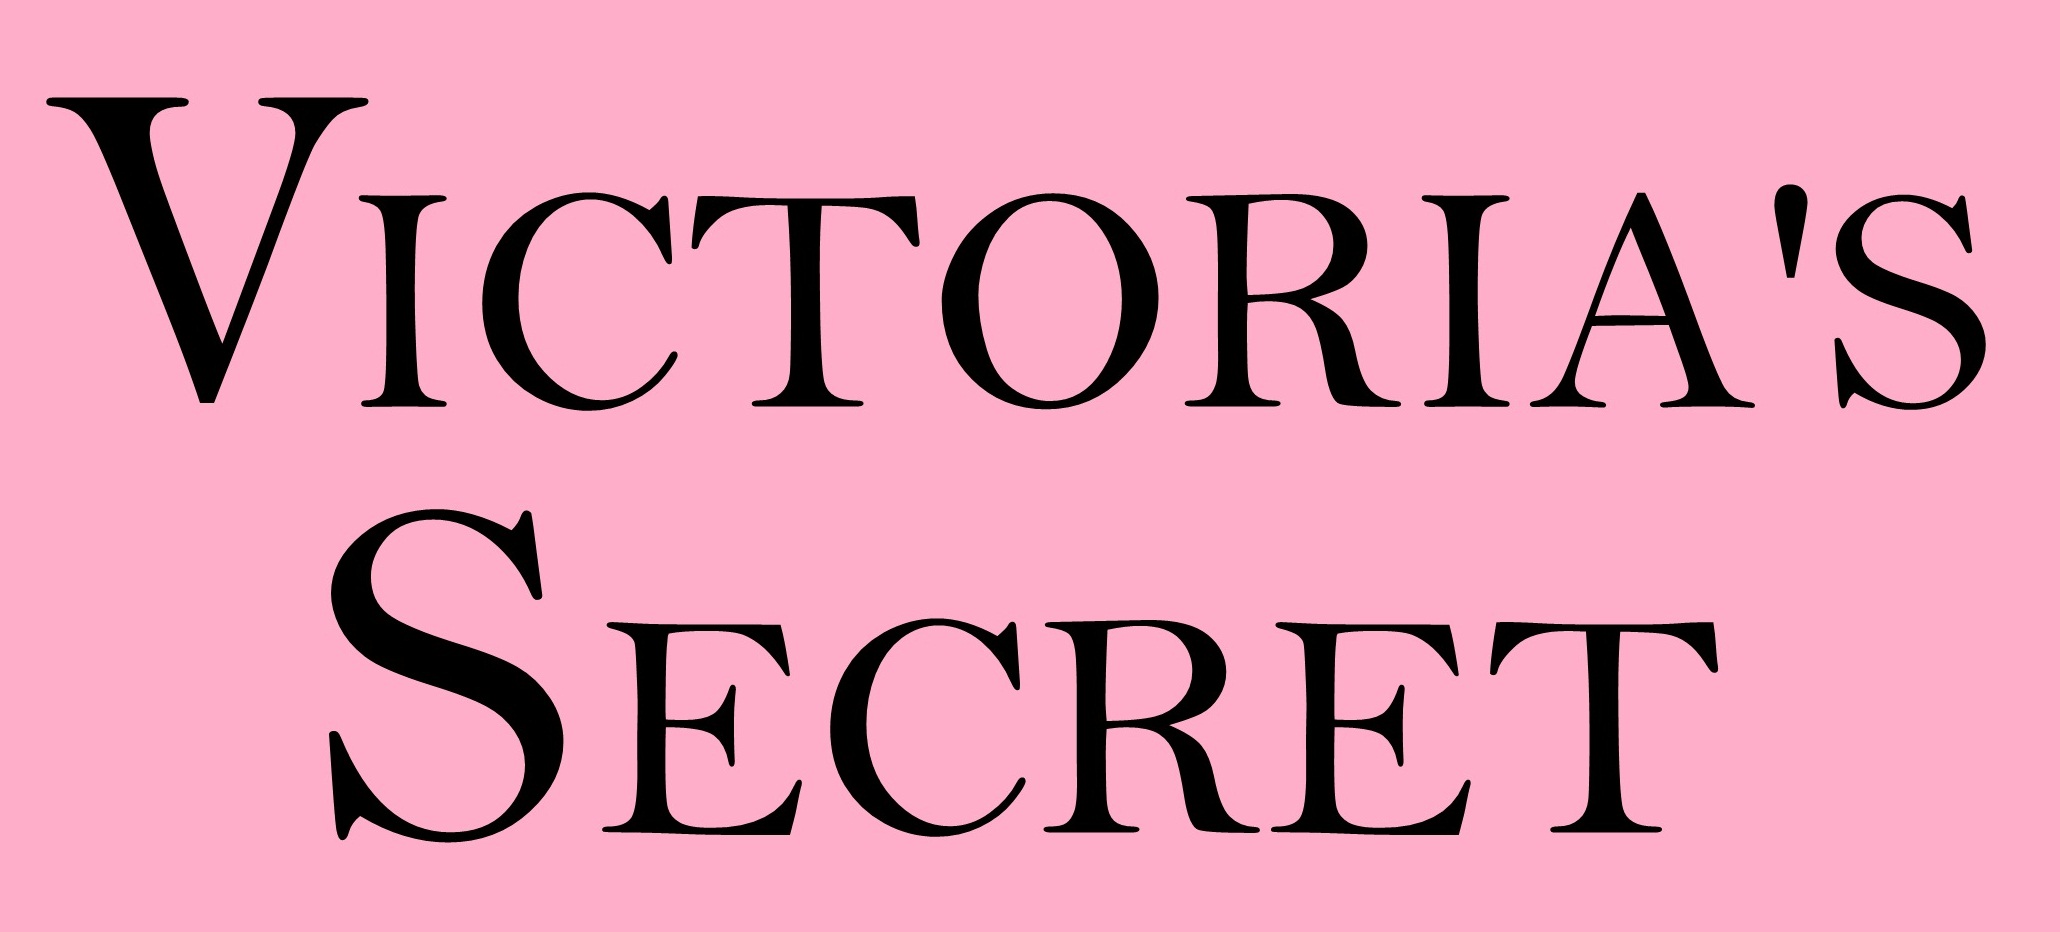 Модели Victoria’s Secret продемонстрировали роскошные фигуры в модных бикини (20 ФОТО)